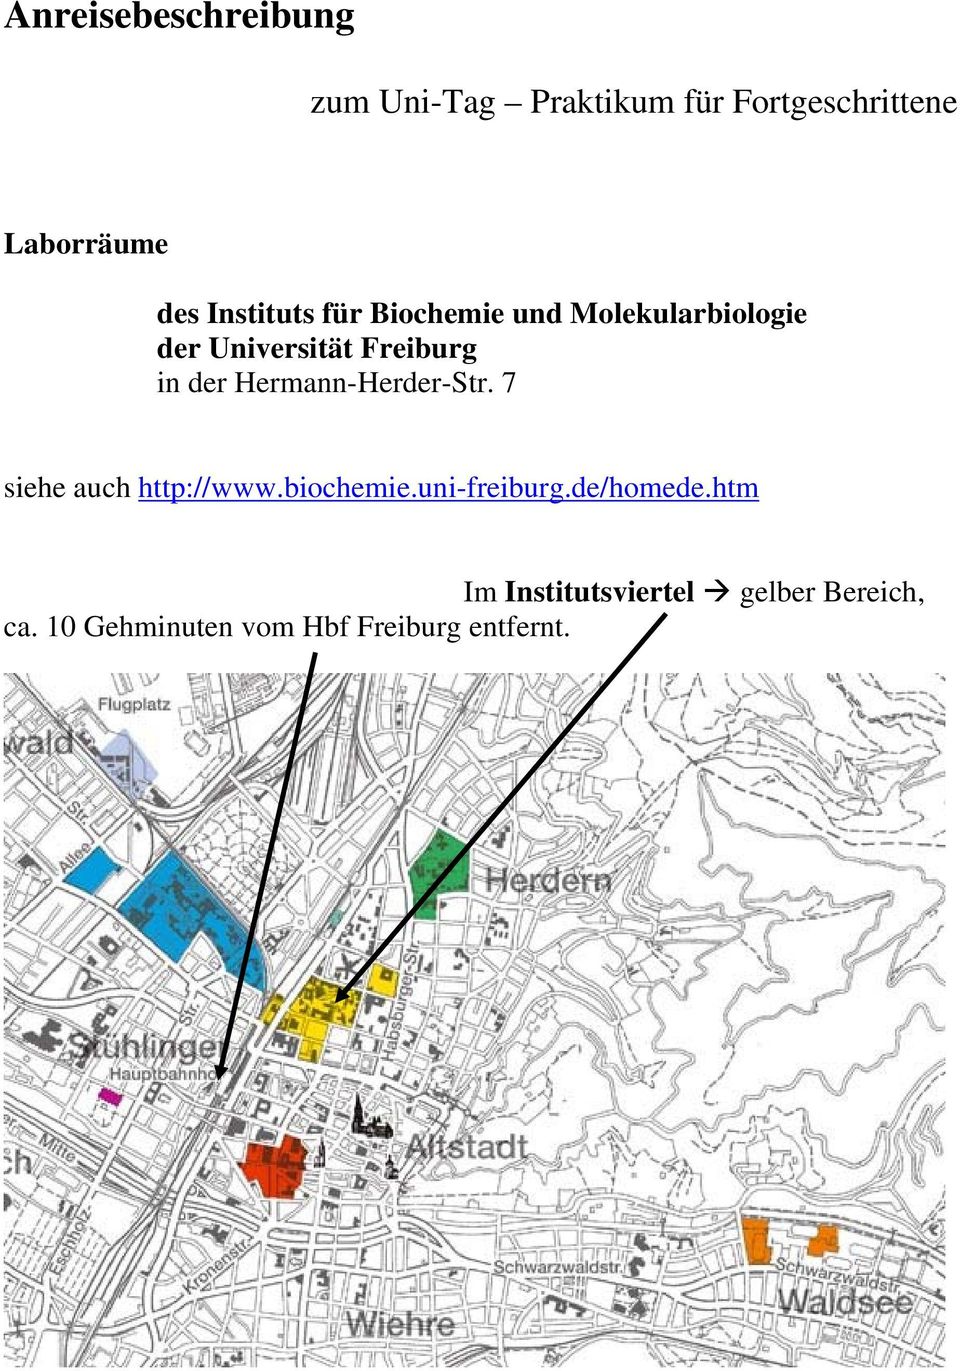 Hermann-Herder-Str. 7 siehe auch http://www.biochemie.uni-freiburg.de/homede.